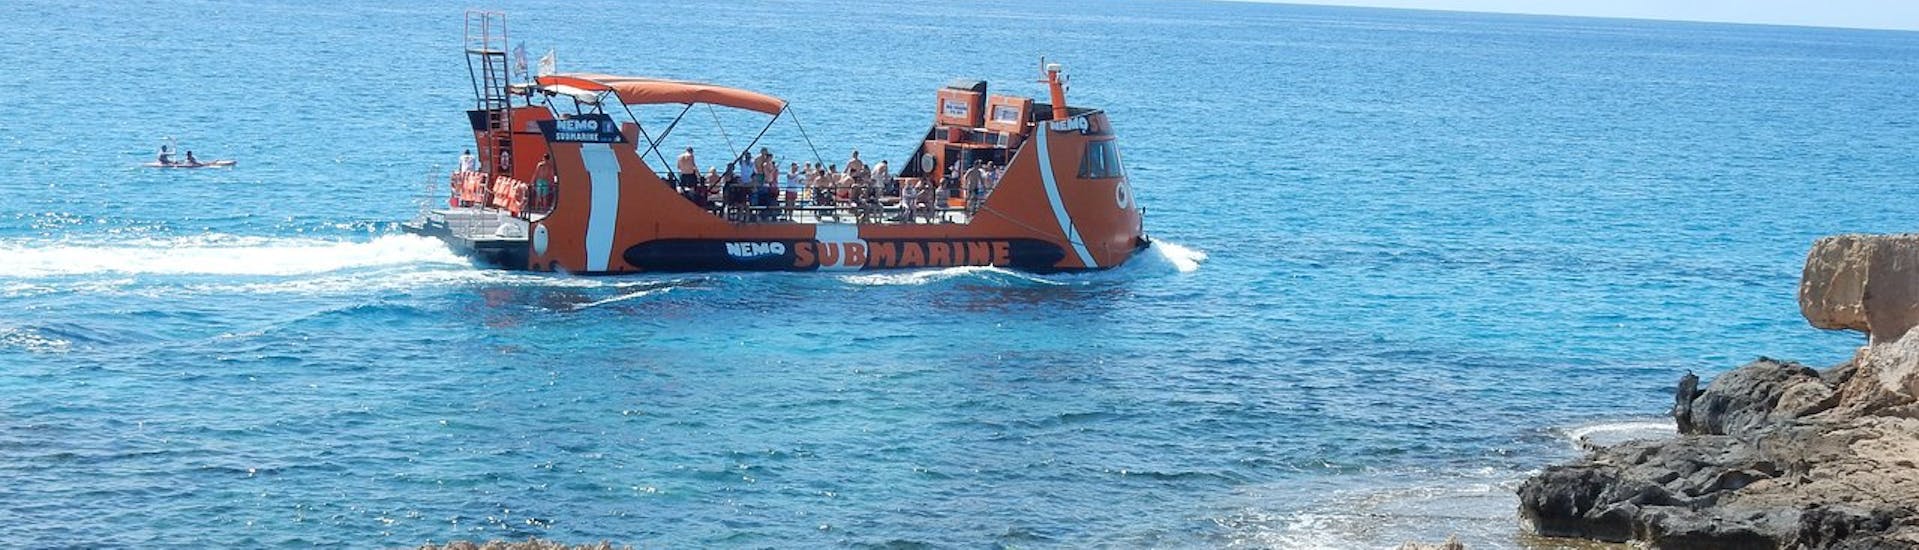 Das Boot von einer Höhle aus gesehen während einer Tour entlang der Küste von Ayia Napa mit Nemo Submarine.